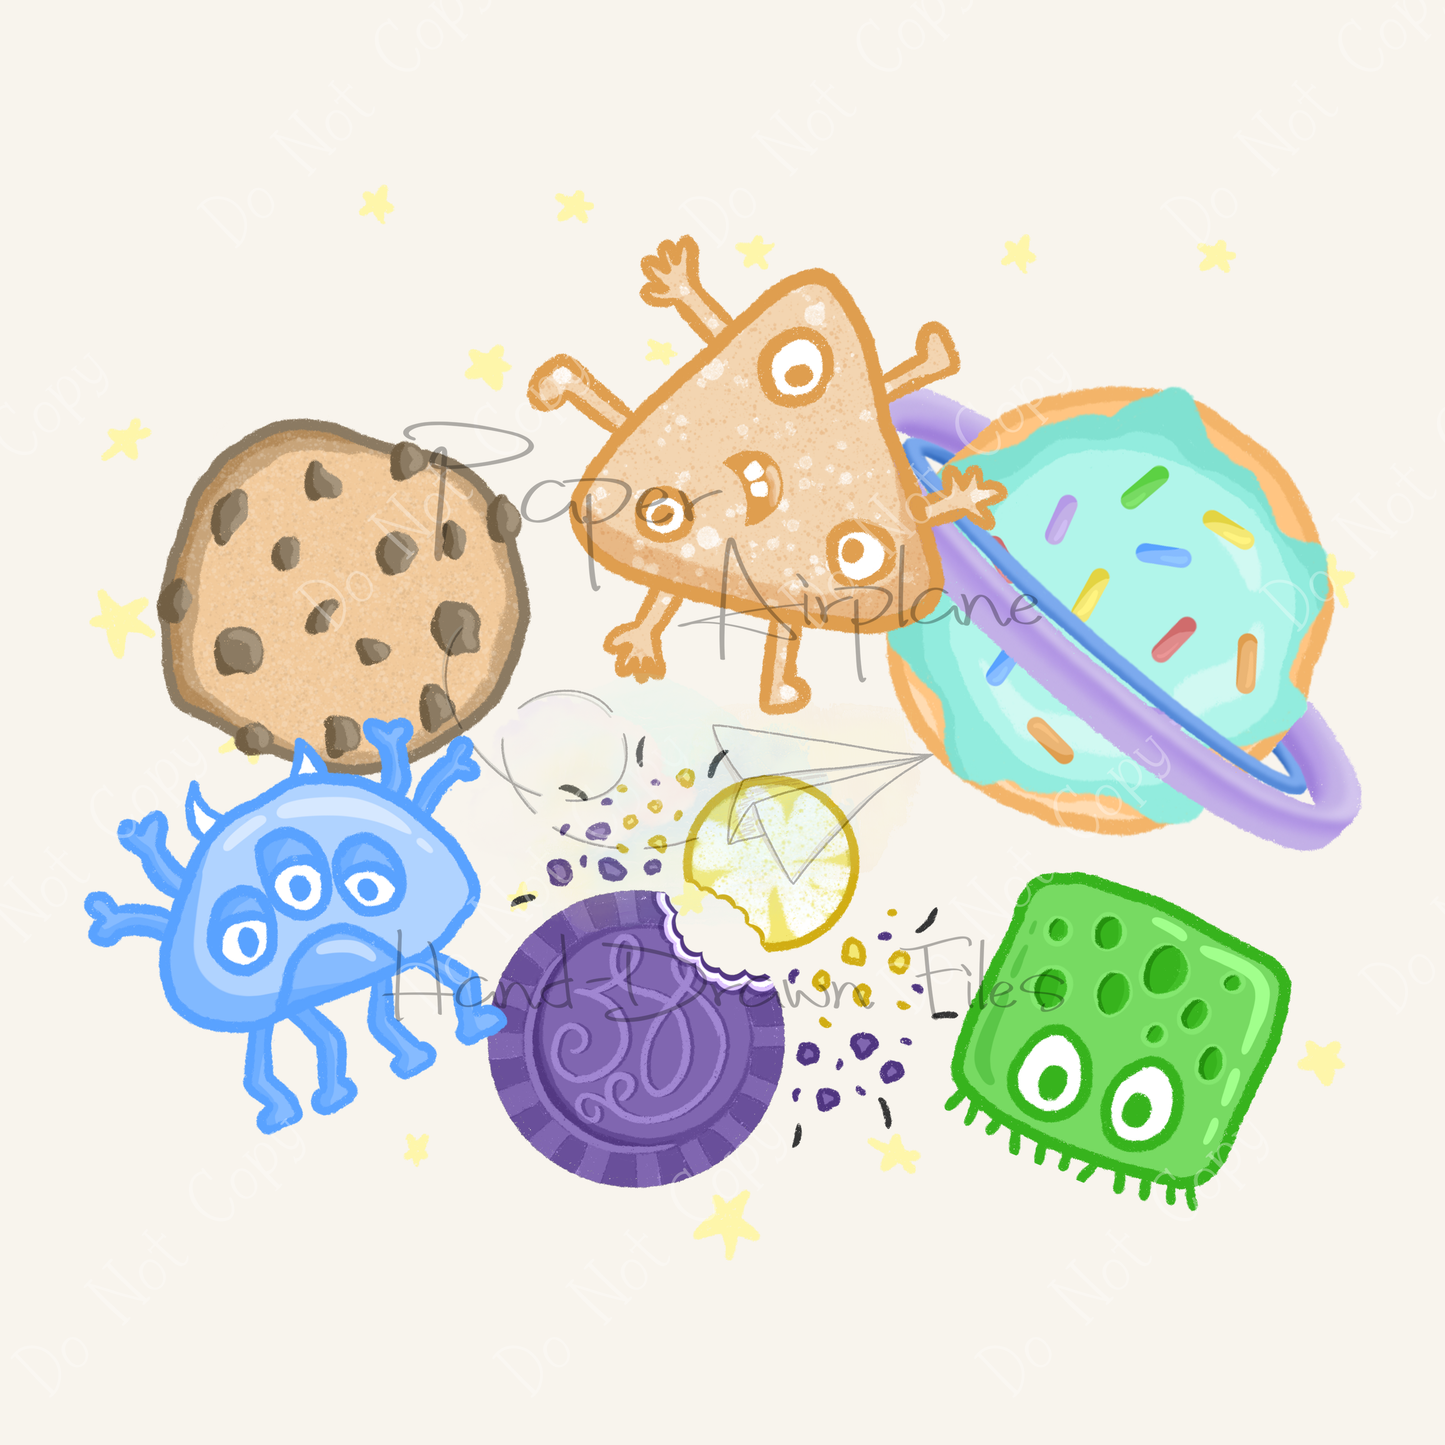 Monster Space Cookies (Original)